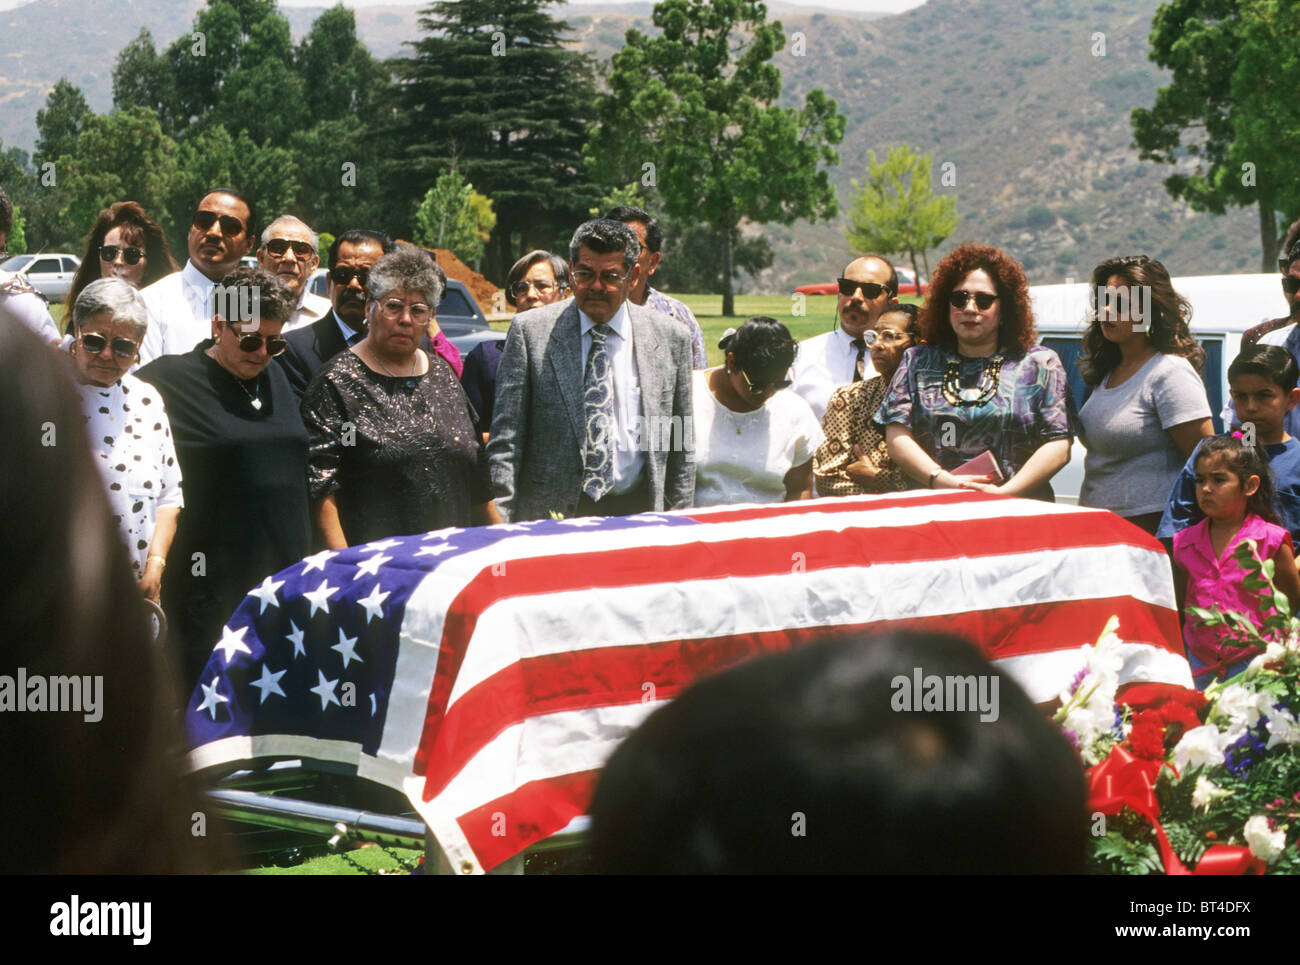 Funérailles cimetière enterrement famille hispanique rite cérémonie mort mourir triste chagrin pleurer pleurer amour cercueil drapé d'un drapeau Banque D'Images